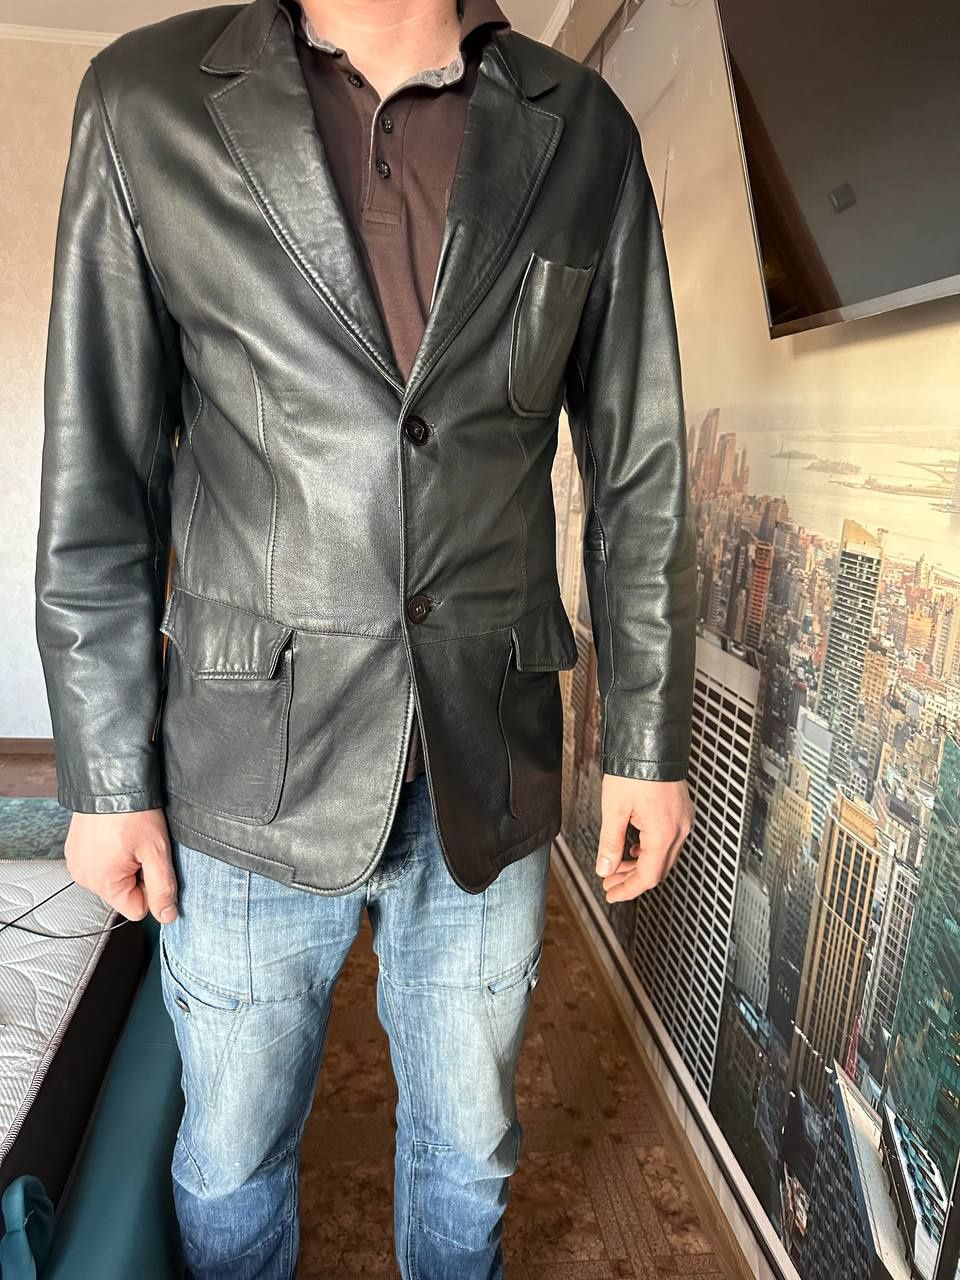 Кожанный мужской пиджак, размер 50.